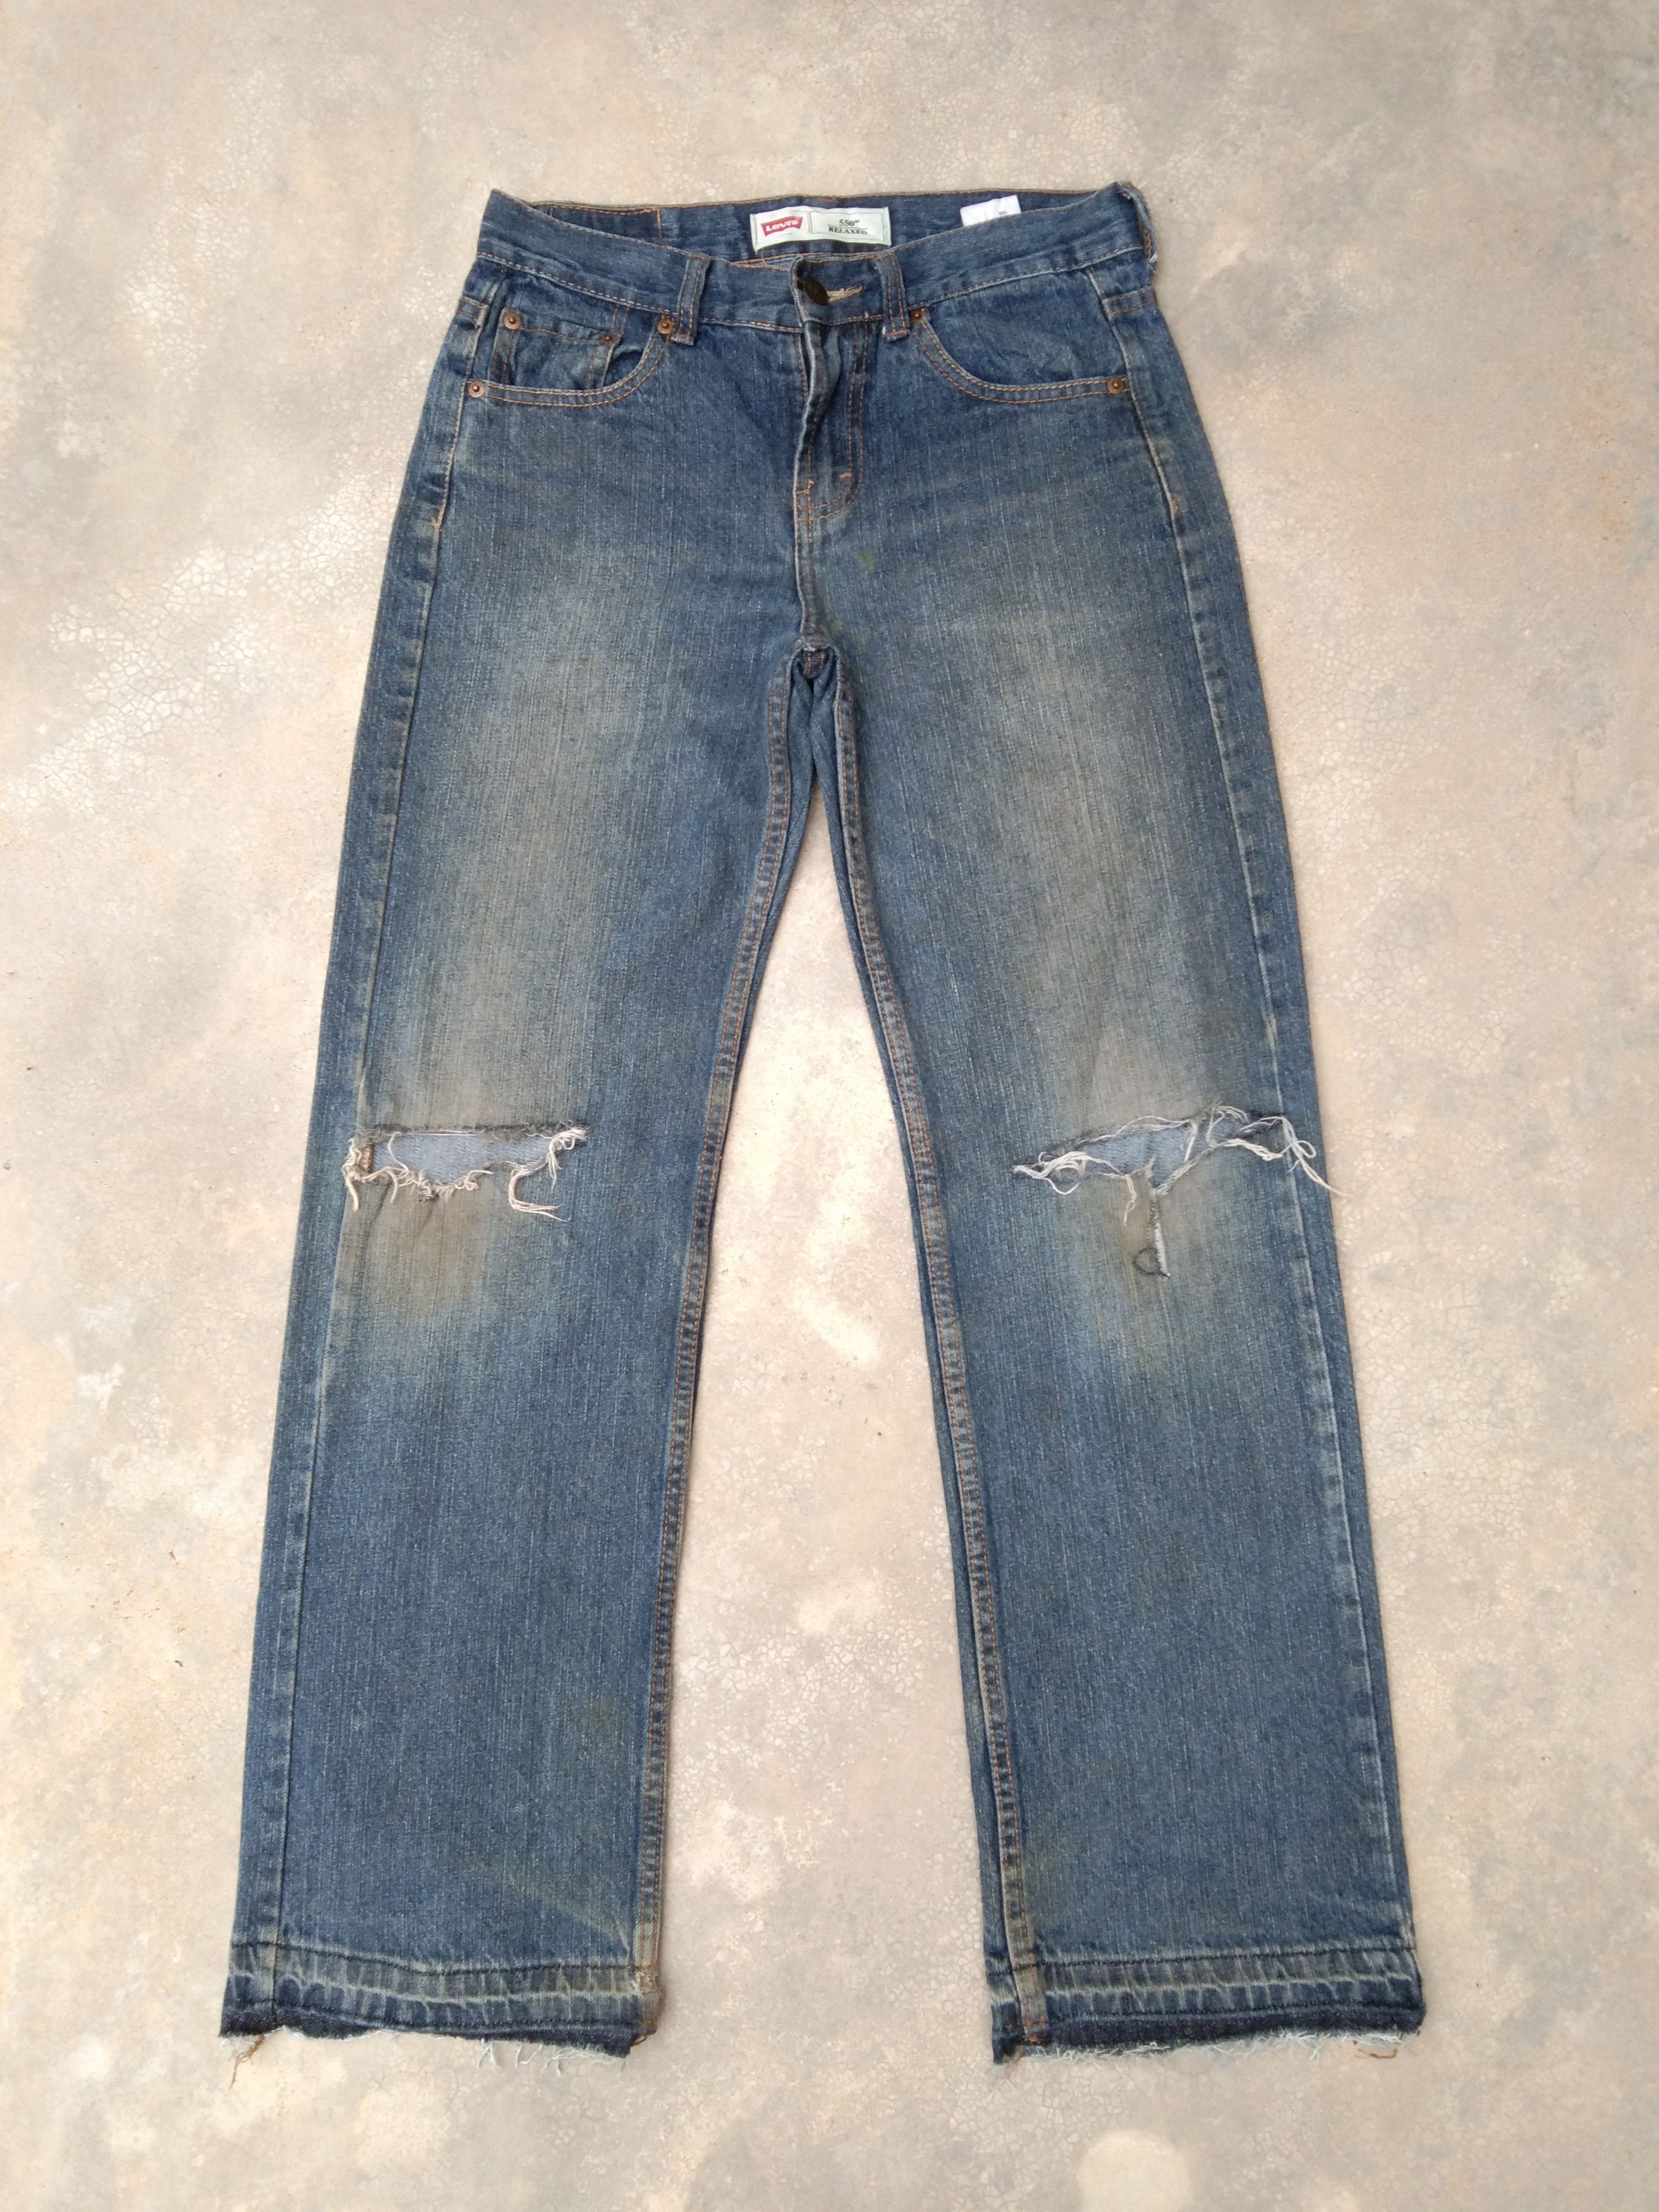 Vintage Vintage Levi's Jeans 550 Distressed Denim | Grailed